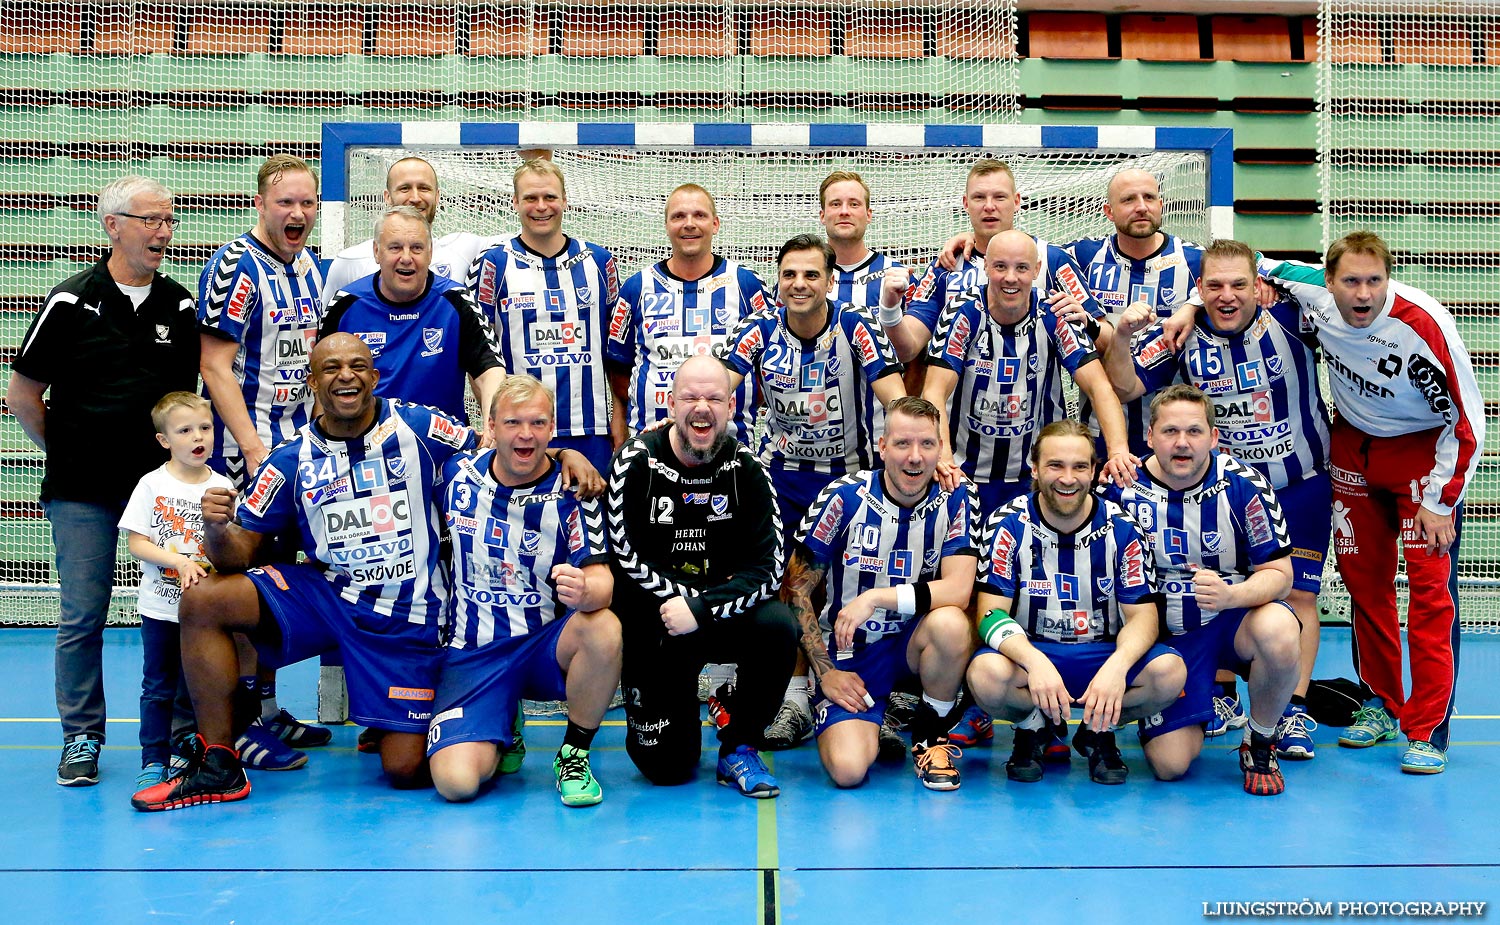 Trim-SM Herrar Bronsmatch Västra Frölunda IF-IFK Skövde HK 11-20,herr,Arena Skövde,Skövde,Sverige,Handboll,,2015,117094